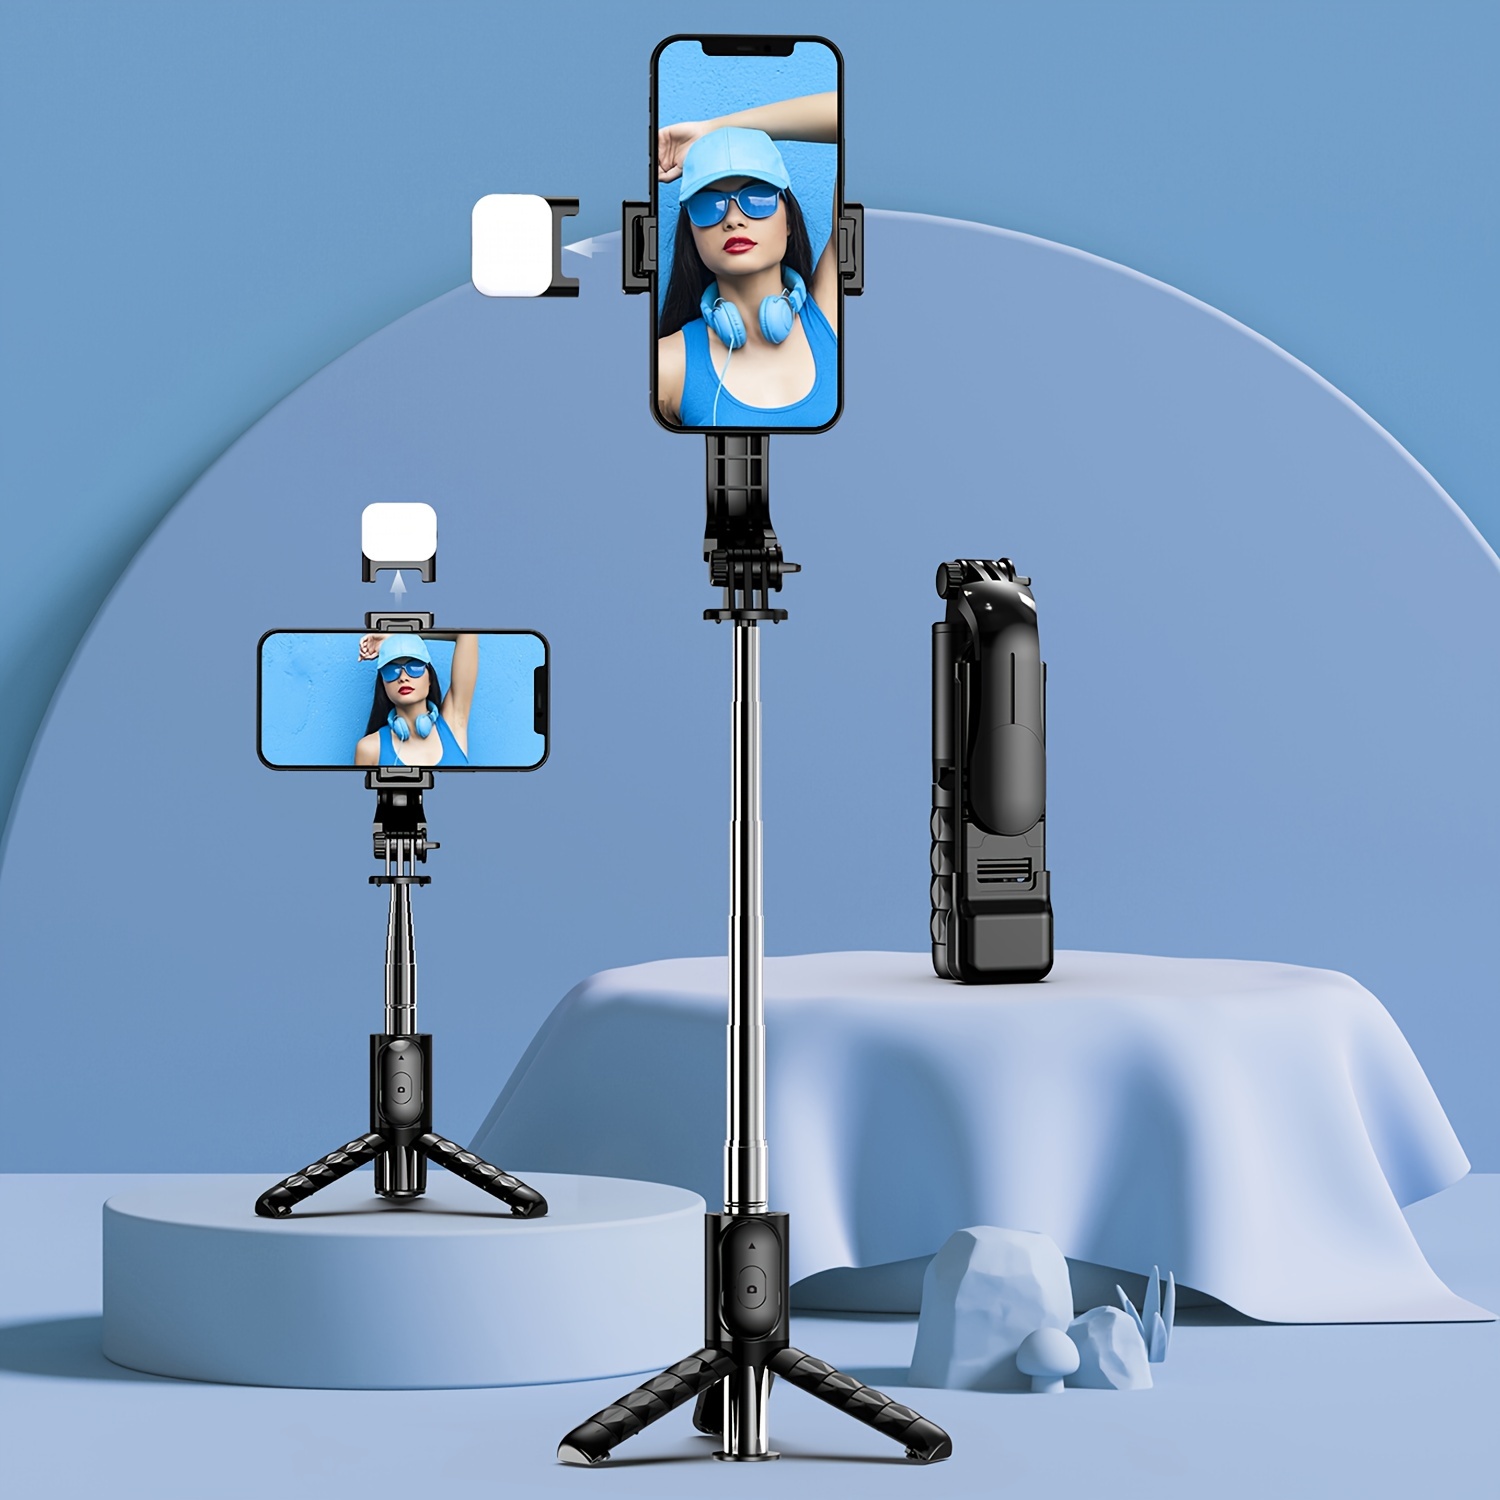 Palo selfie con control remoto y luz, trípode extensible de 63 pulgadas  para iPhone/cámara/viajes, rotación de 360°, trípode de viaje para iPhone